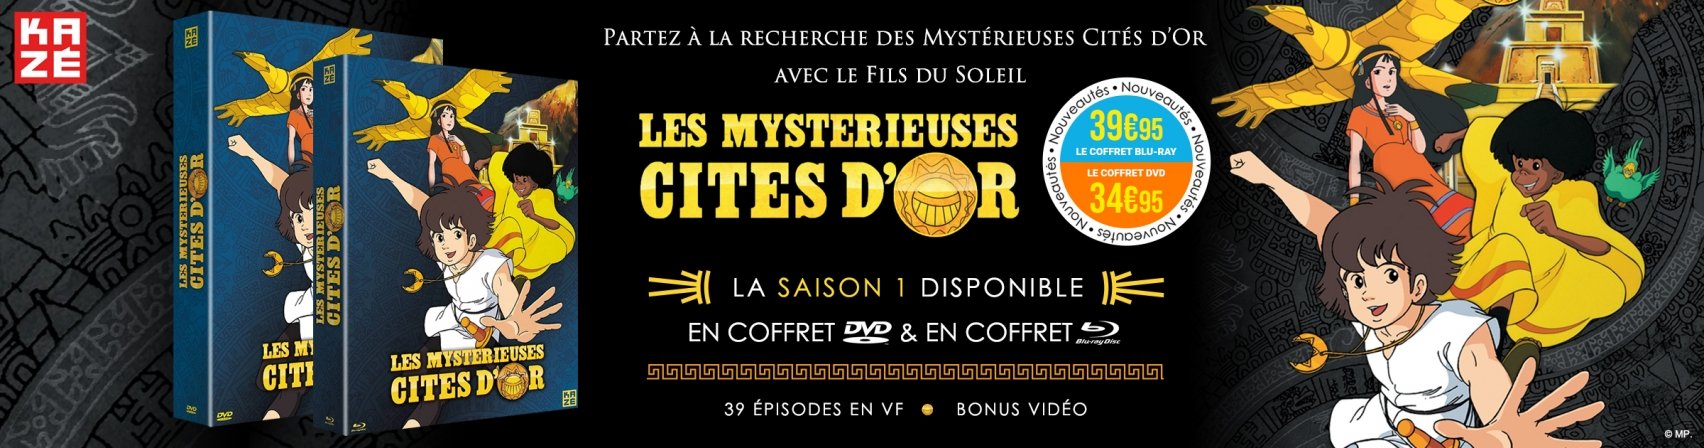 Nouveauté : Les Mystérieuses Cités d'Or saison 1